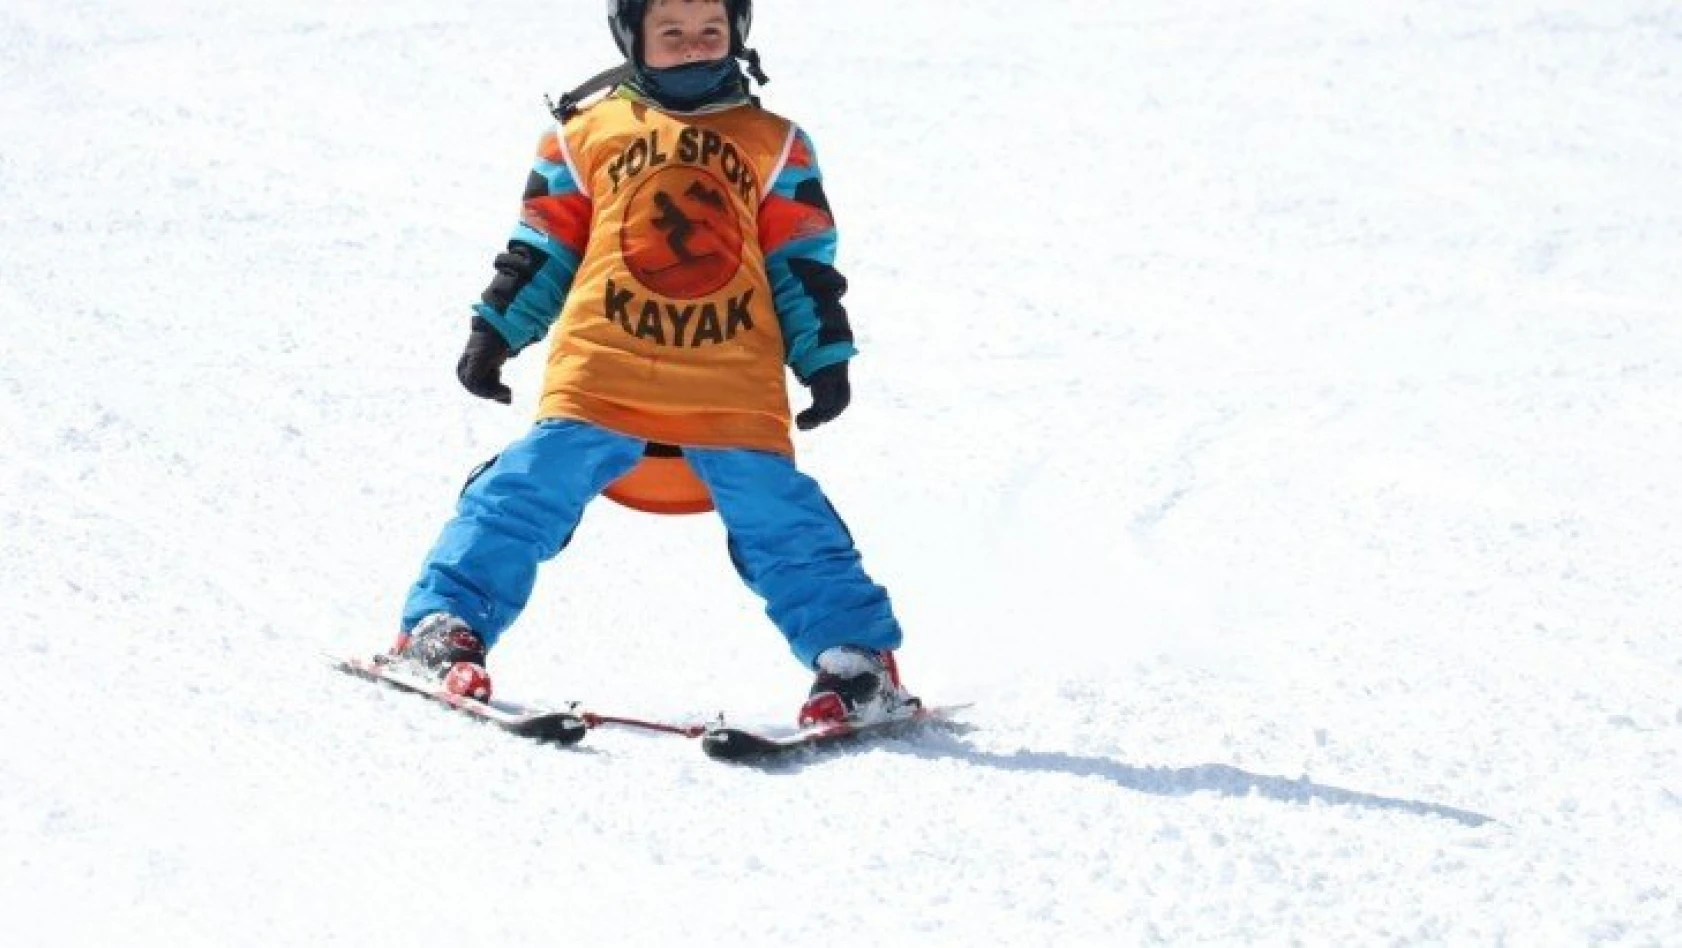 5 yaşındaki Yusuf kayak yeteneği ile dikkati çekiyor